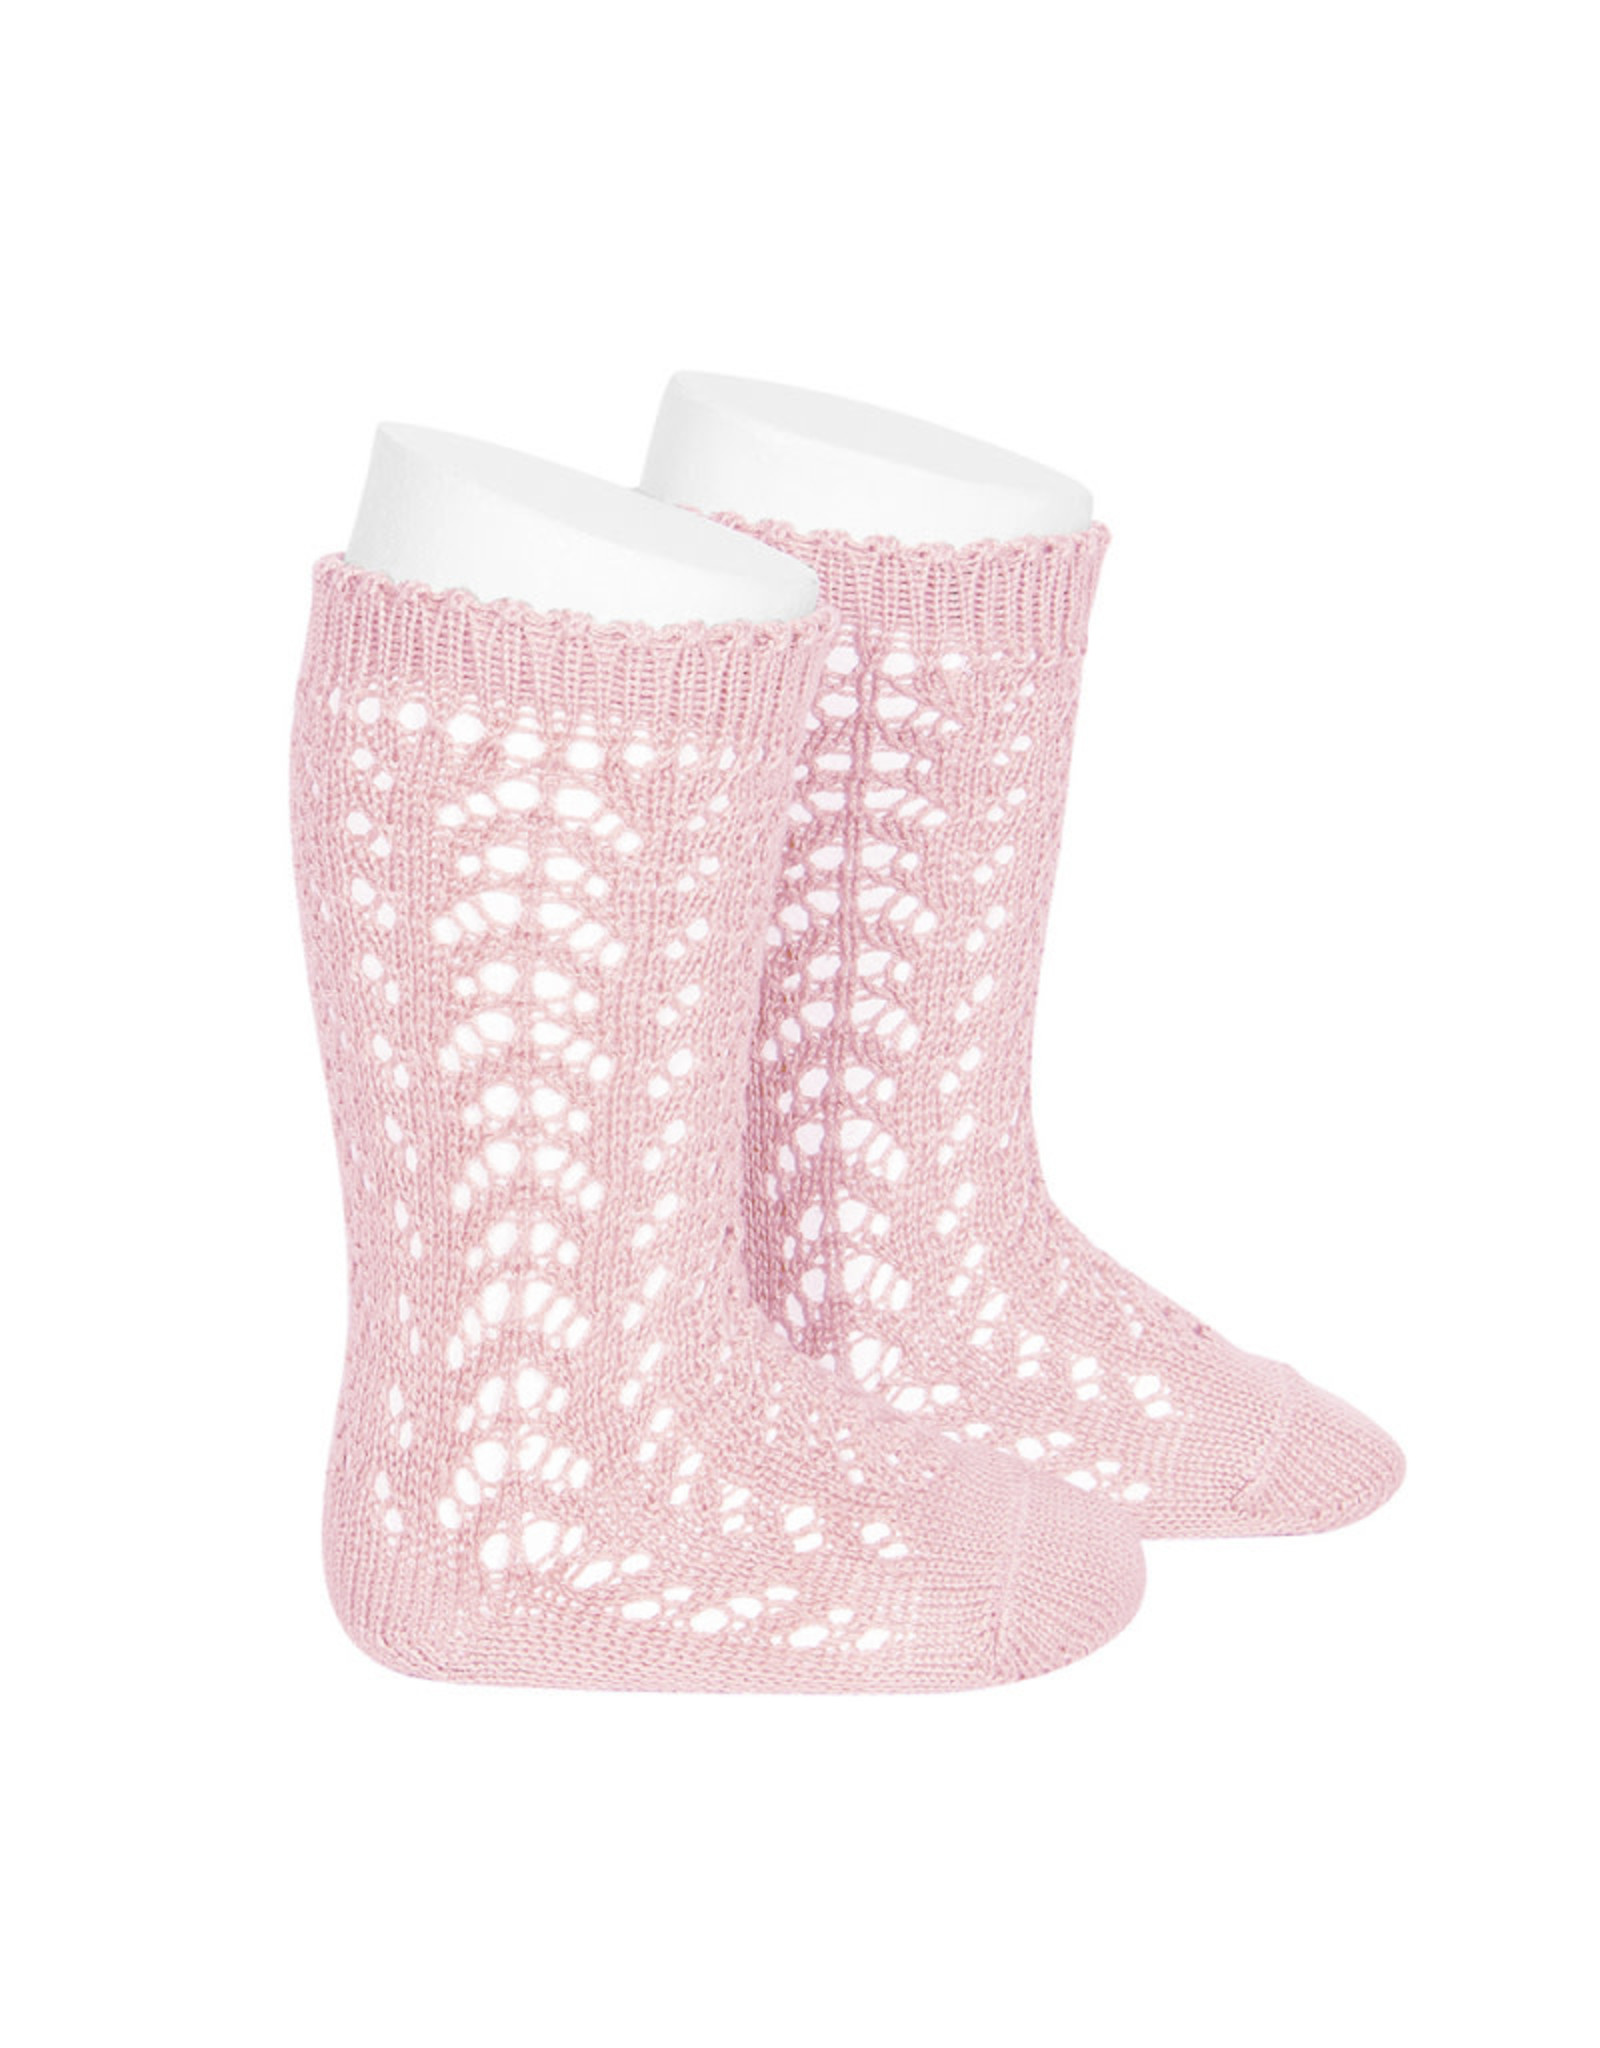 CONDOR Baby Pink Openwork Knee Socks